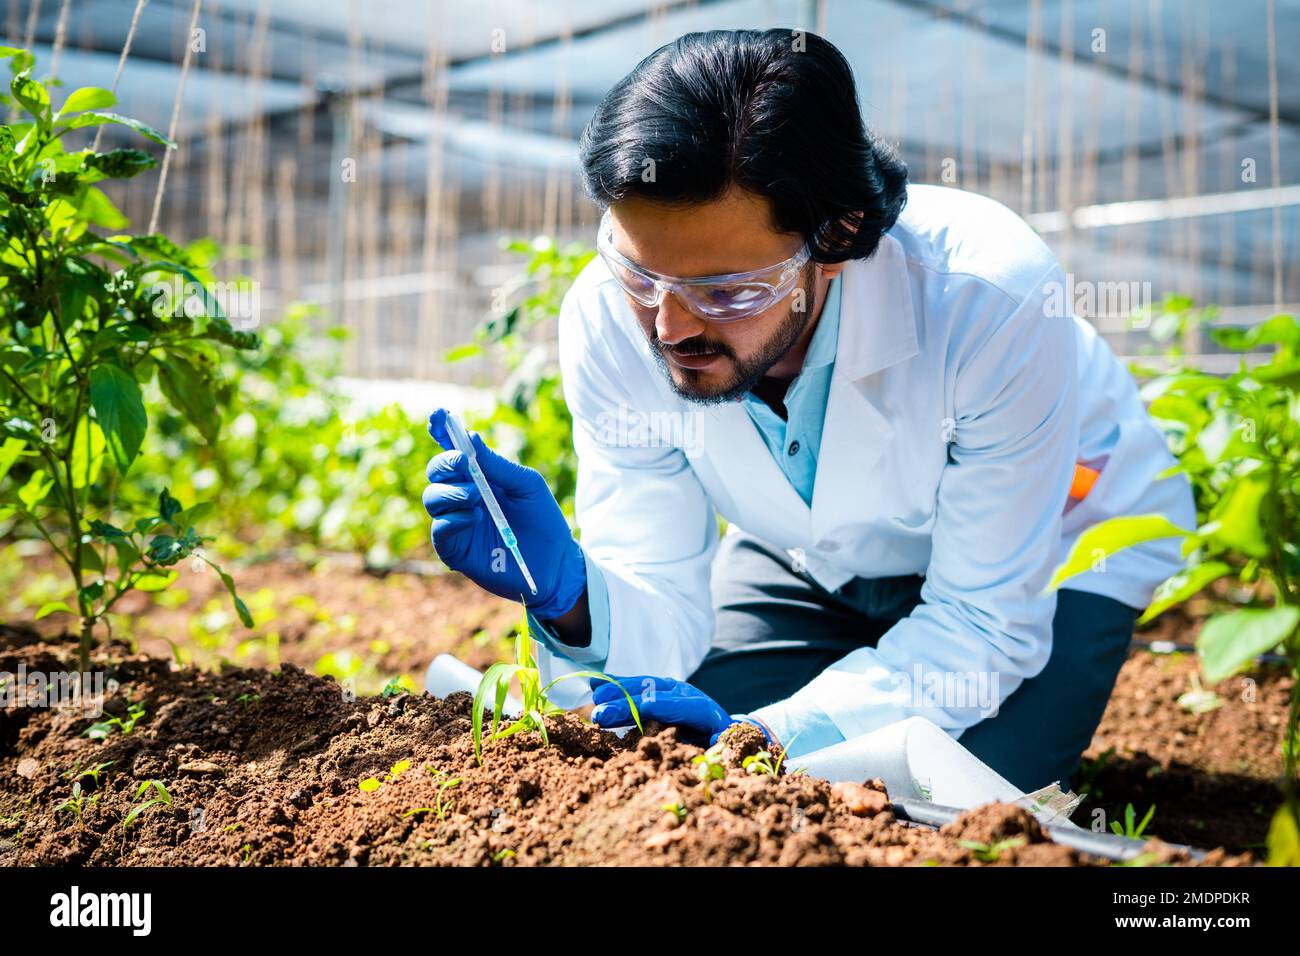 Agrarwissenschaftler im Labor fügt Chemikalien zu kleinen Laboranlagen hinzu - Konzept der Forschung, fokussiert und erfinderisch oder Biotechnologie. Stockfoto